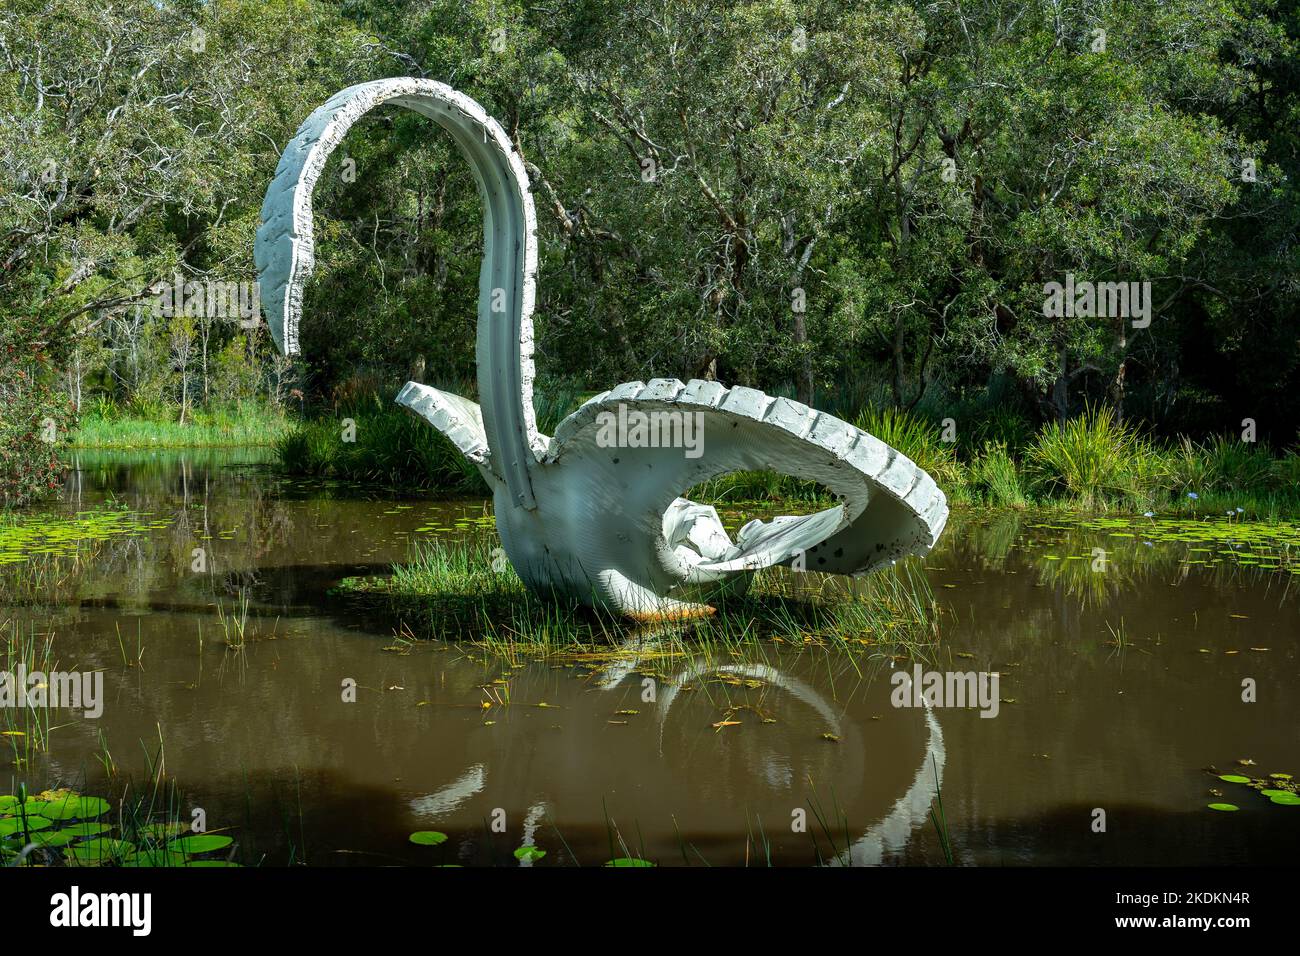 Gold Coast, Queensland, Australie - sculpture de cygne géant faite des pneus de caoutchouc usagés Banque D'Images